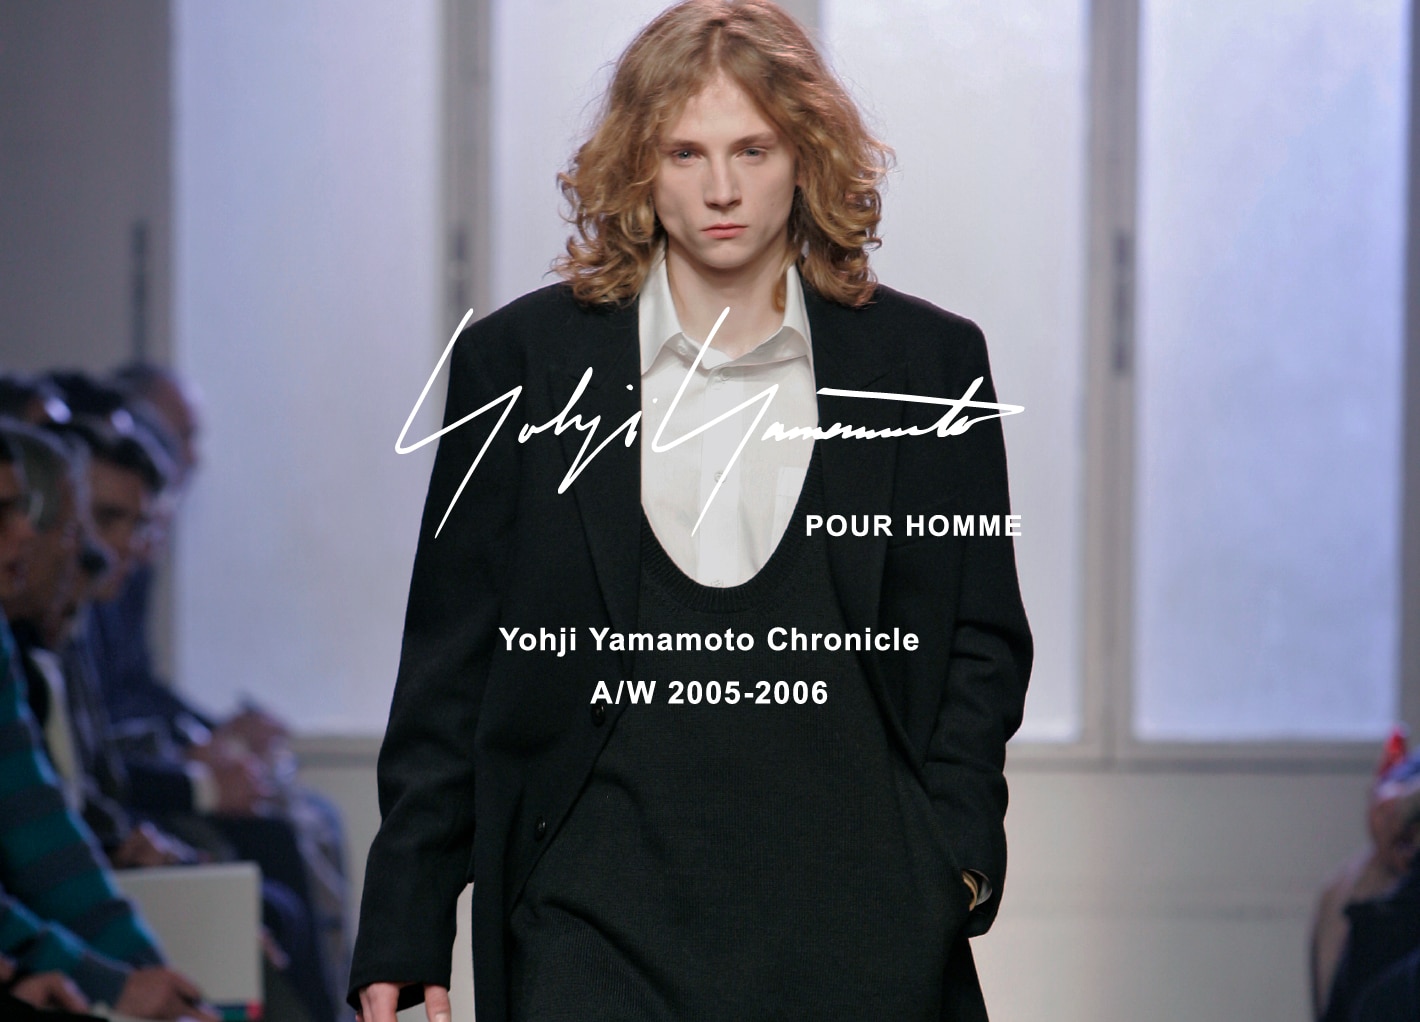 Yohji Yamamoto Chronicle – POUR HOMME AW 2005-2006 | Yohji 